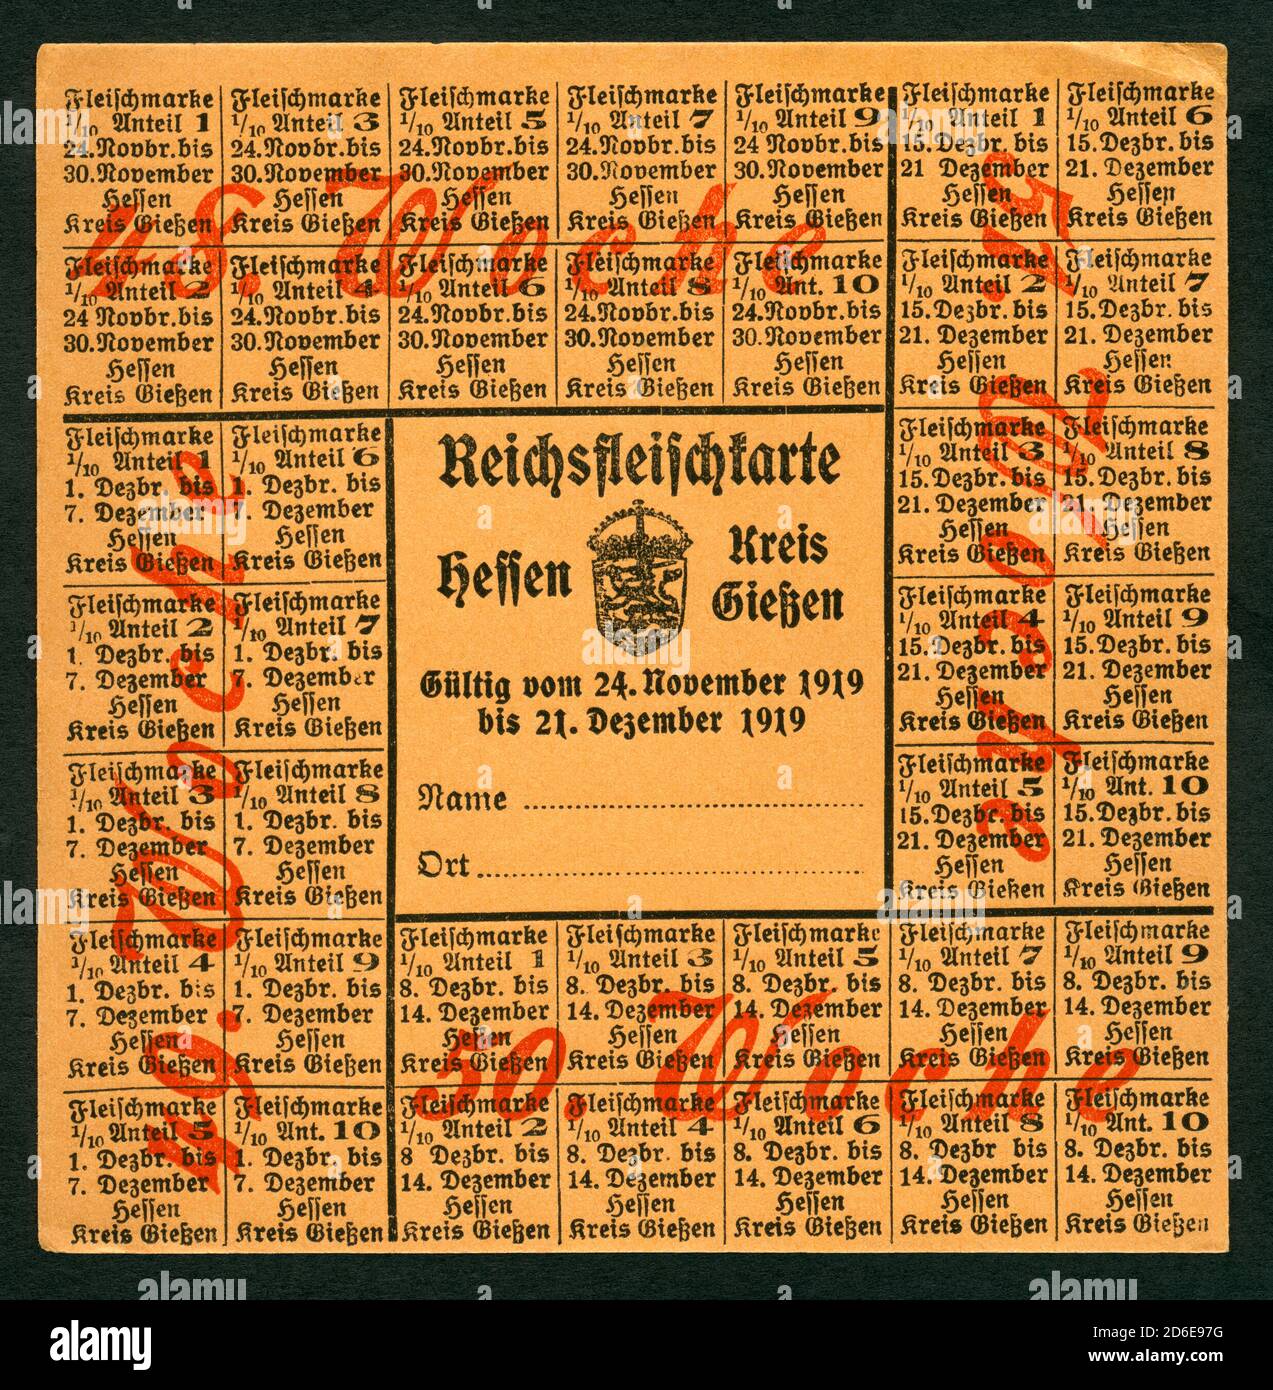 Europa, Deutschland, Hessen, Gießen, Zeit nach dem 1. Weltkrieg , Lebensmittelmarken für Fleisch ( Reichsfleischkarte ) , gültig vom 24. November 1919 bis 21. Dezember 1919 , Größe 10,7 cm x 10,8 cm , Motiv darf nur für journalistische oder wissenschaftliche Zwecke genutzt werden, Rechte werden nicht vertreten . /  Europe, Germany, Hesse, Gießen,  time after WW I , ration stamps for meat  ( so called Reichsfleischkarte ) , valid from 24. 11. 1919 to 21. 12. 1919 , size 10,7 cm x 10,8 cm ,  image only for journalistic or academic use, there are no rights . Stock Photo